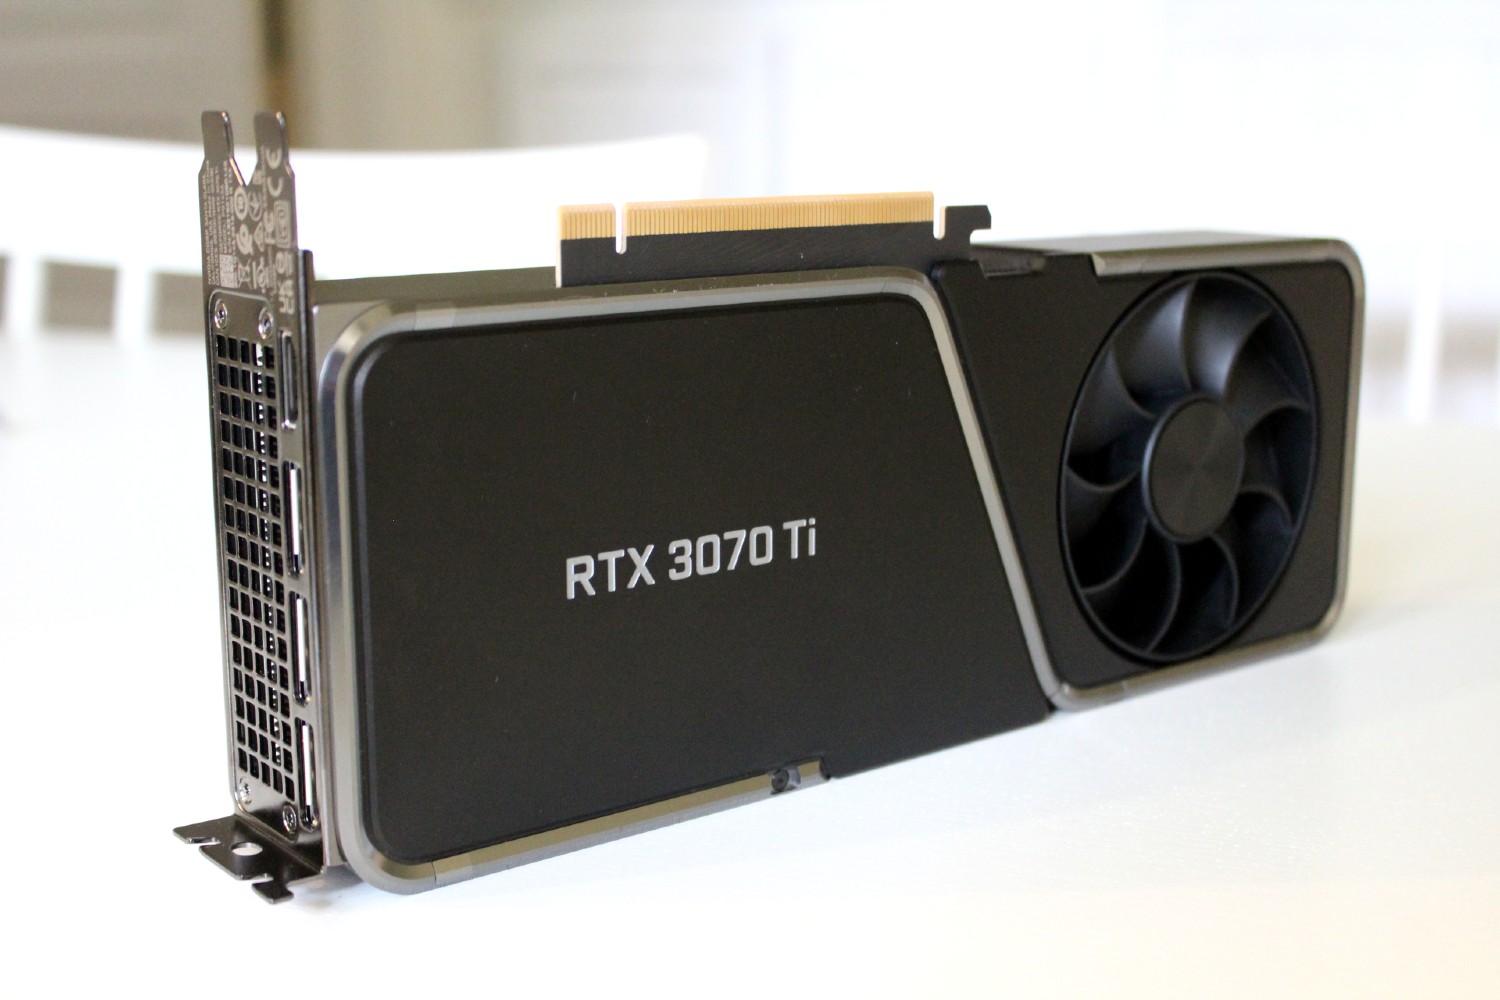 Placa gráfica RTX 3070 Ti da Nvidia.